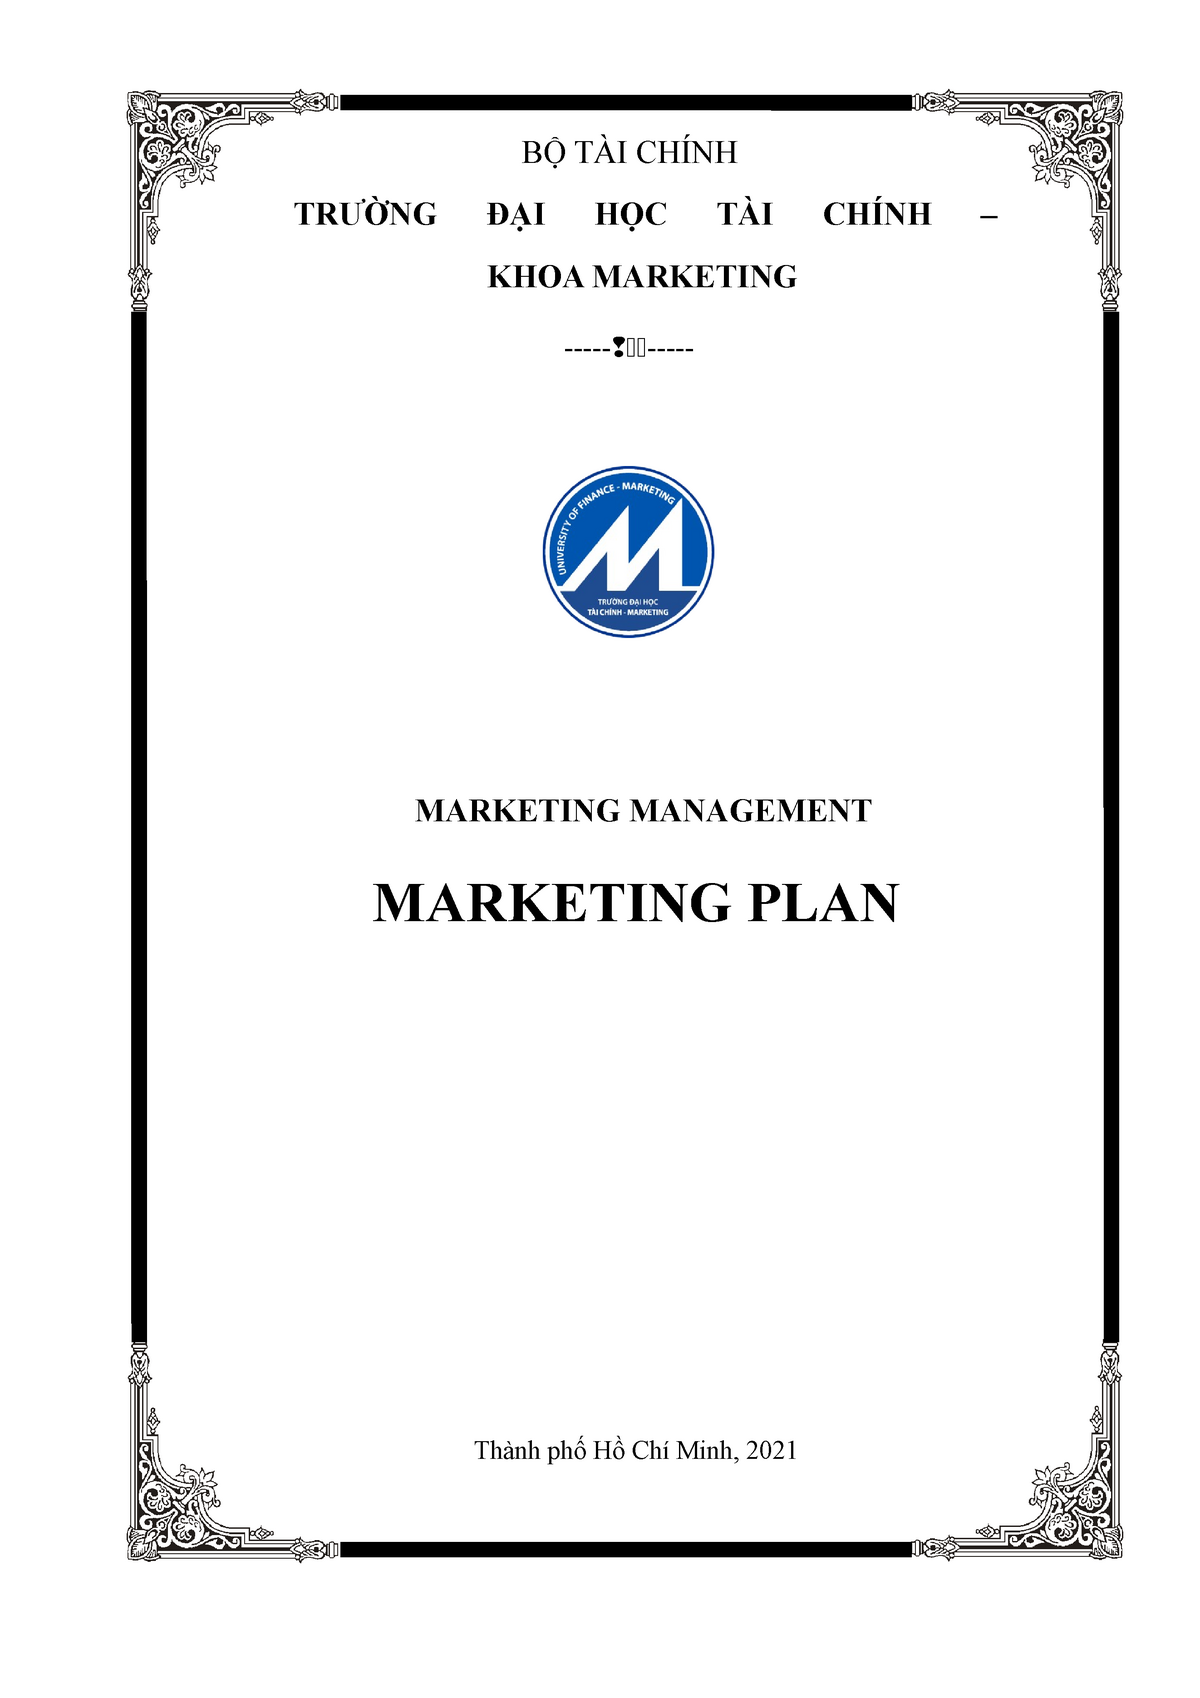 Mkt plan - Launch new product into the market - BỘ TÀI CHÍNH ...